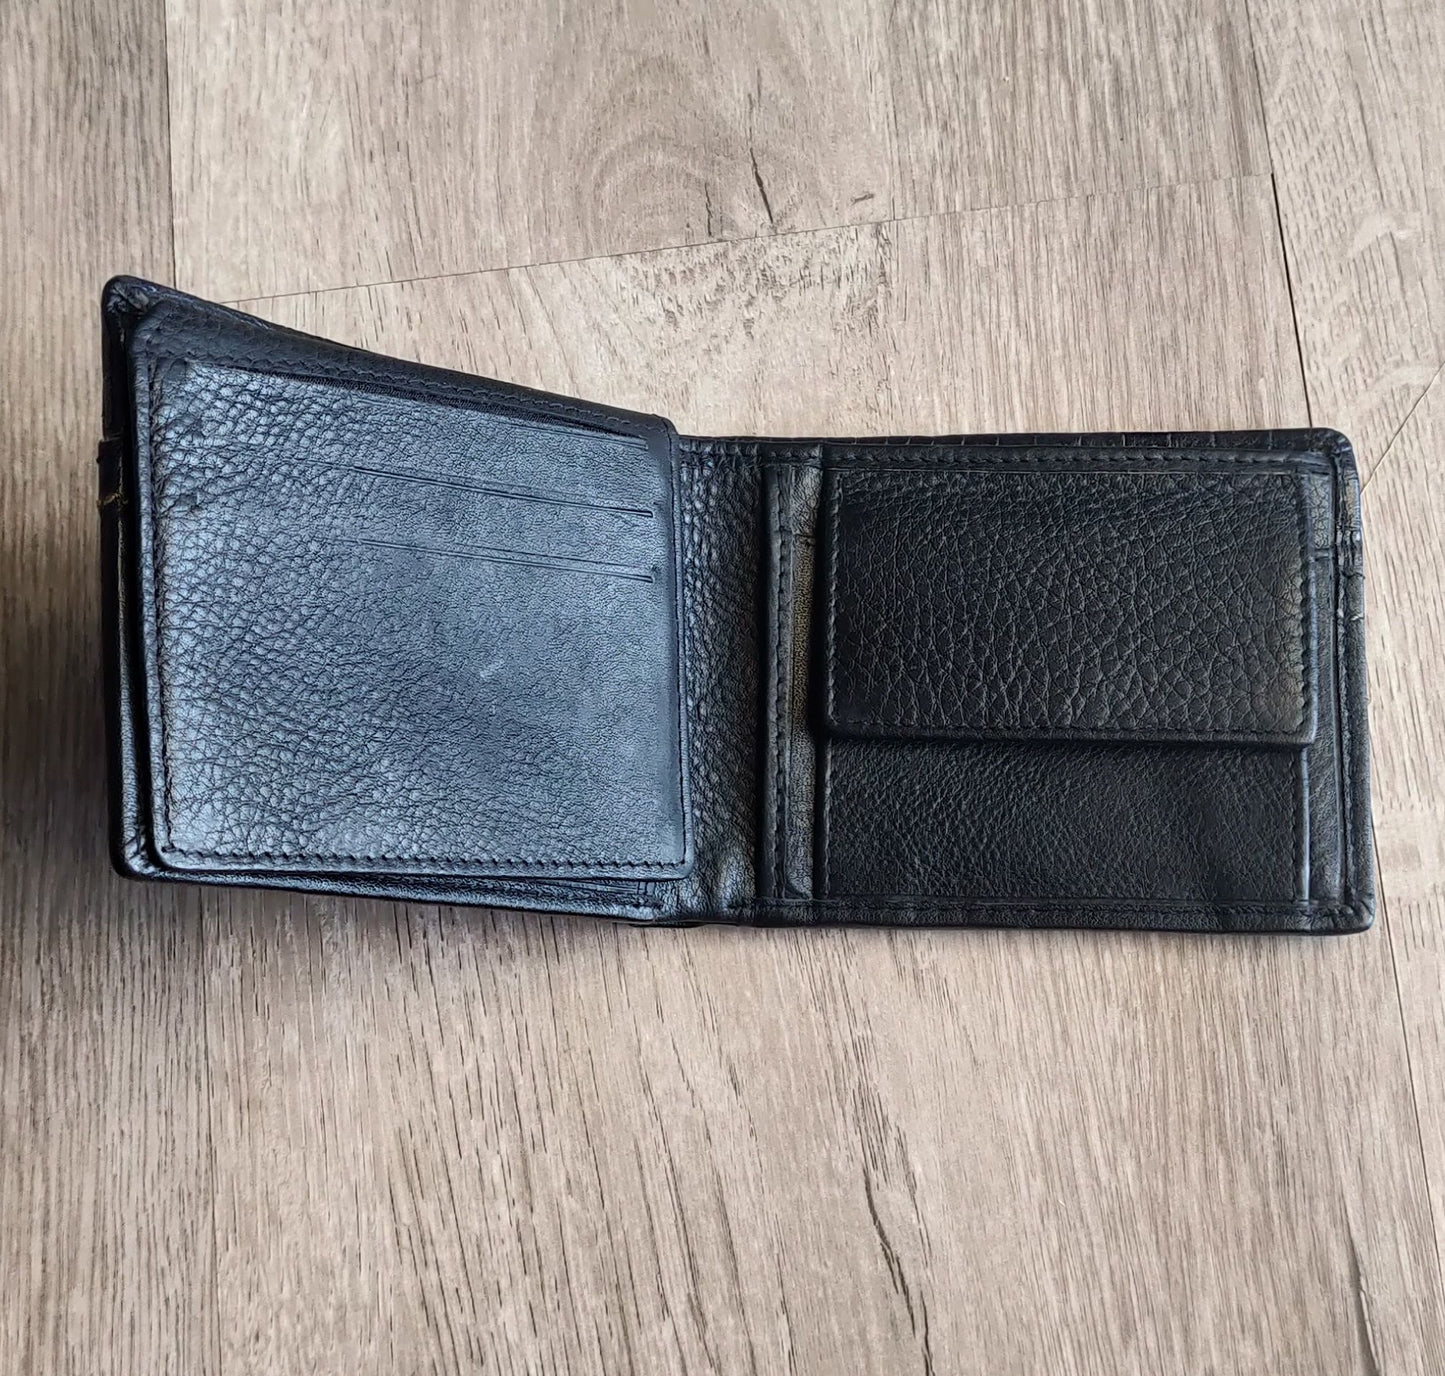 Alagan Opulent Homes Belt and wallet classic combo black